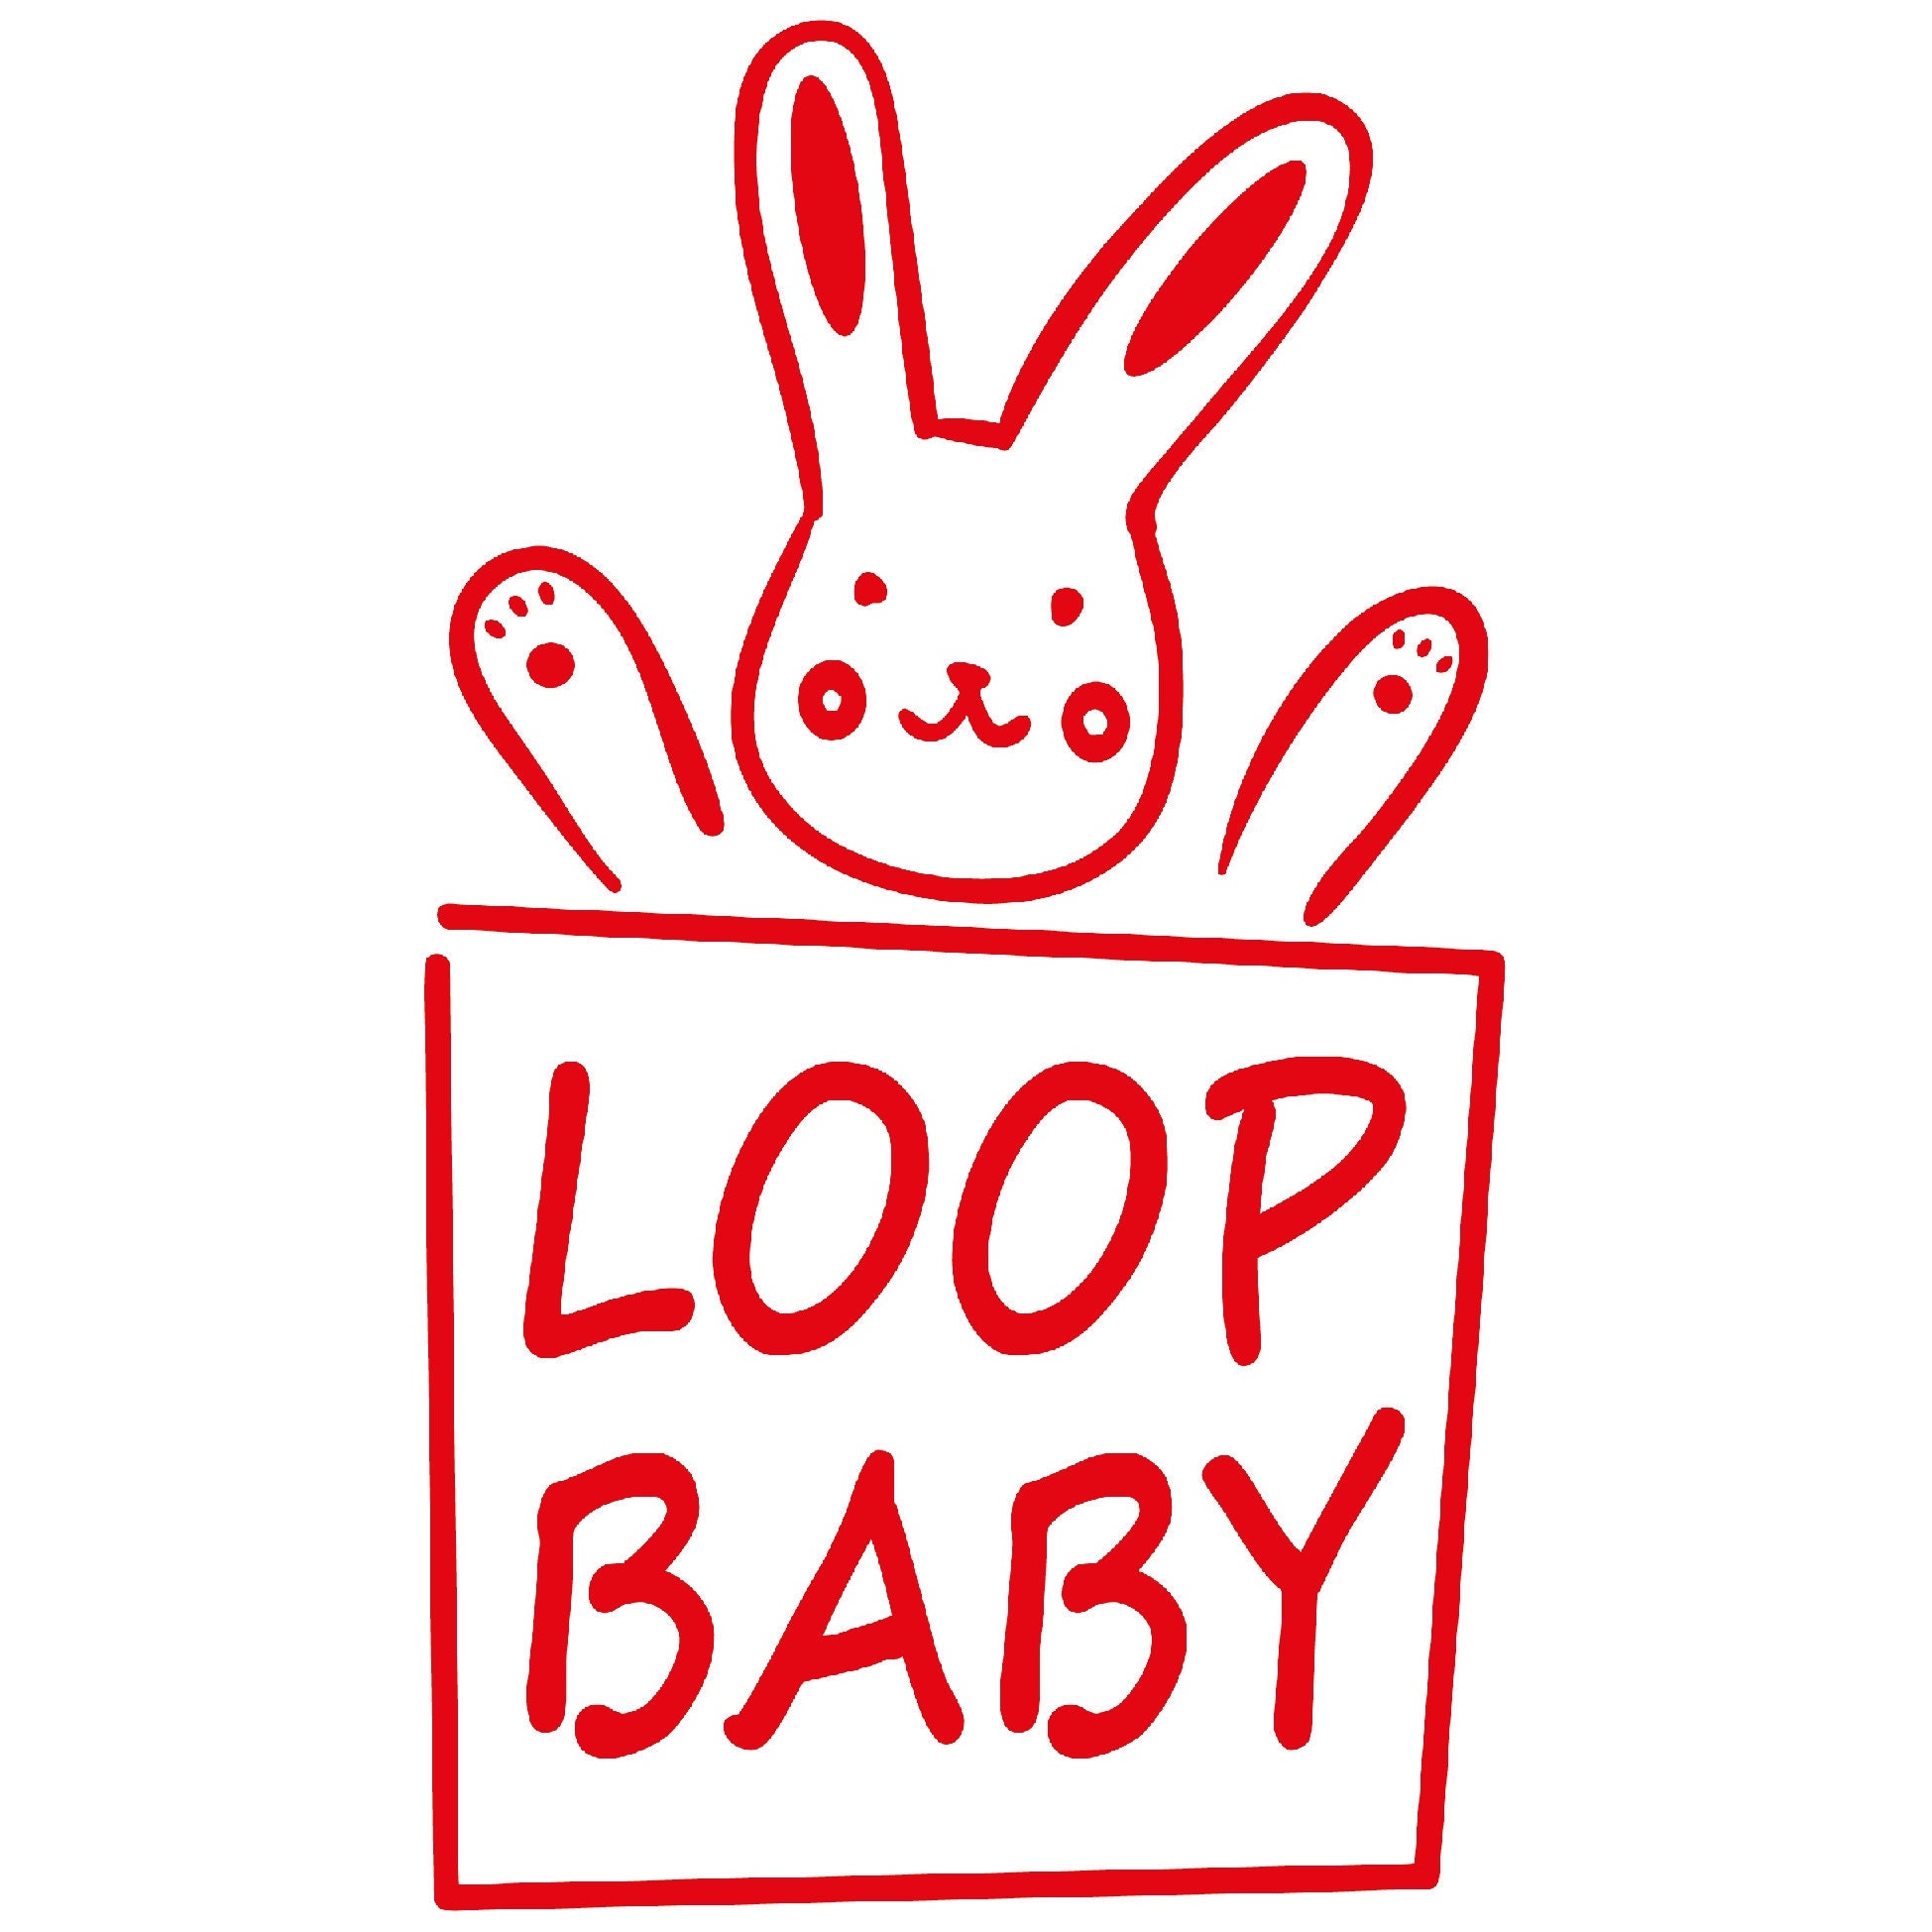 Logo LOOP BABY